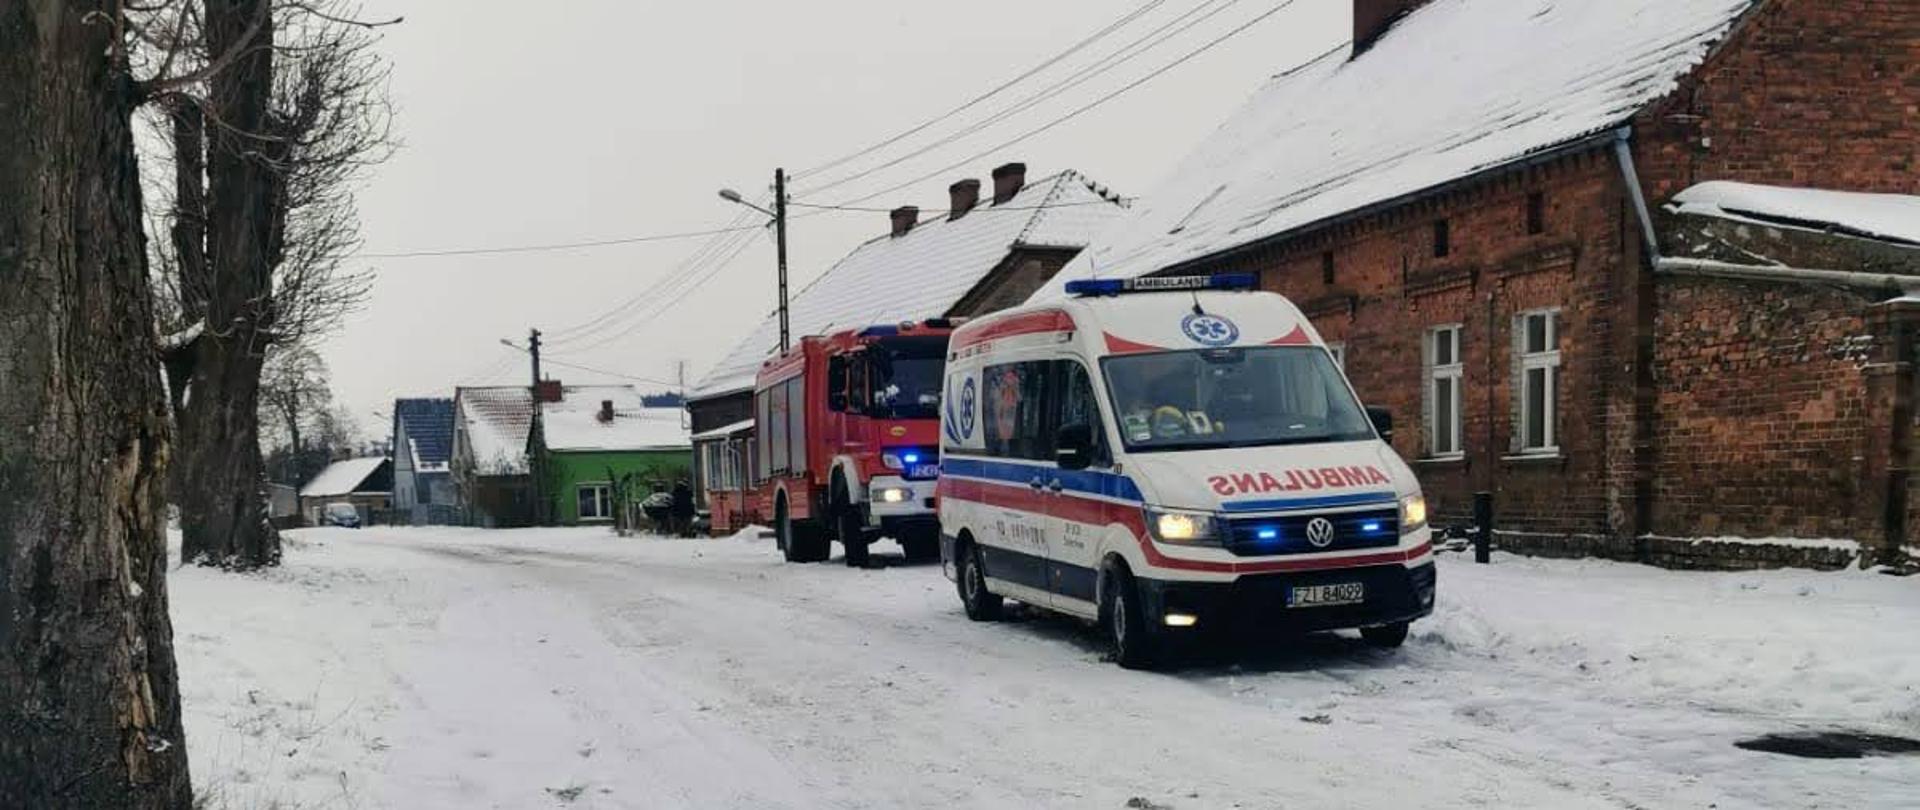 Czad wciąż atakuje! - Ambulans pogotowia i wóz strażacki stoją przed domem osób poszkodowanych